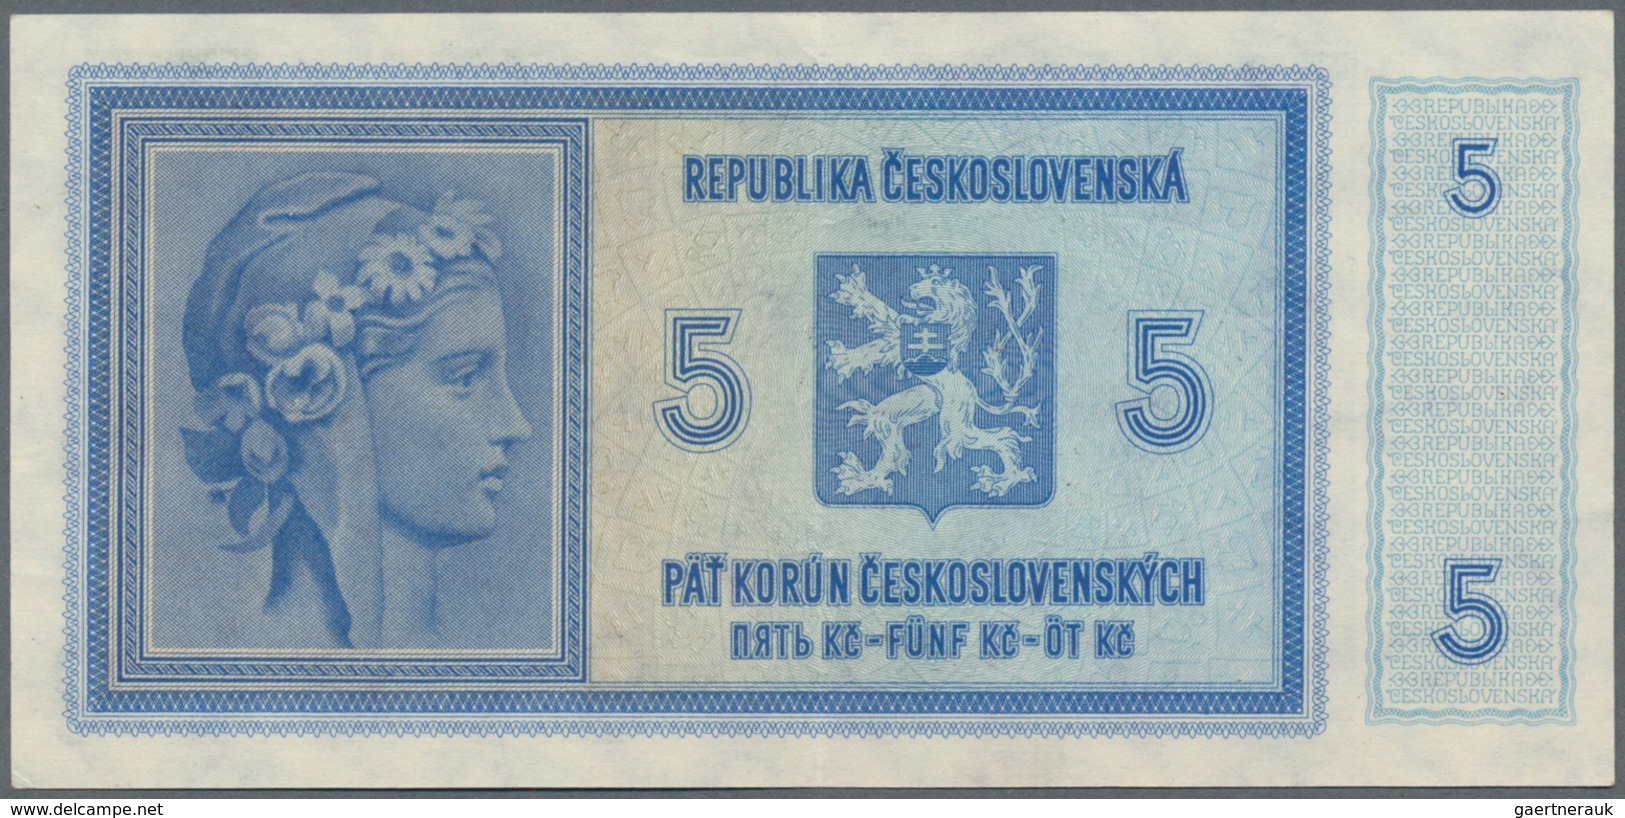 Deutschland - Nebengebiete Deutsches Reich: Protektorat Böhmen und Mähren, lot mit 14 Banknoten, dab